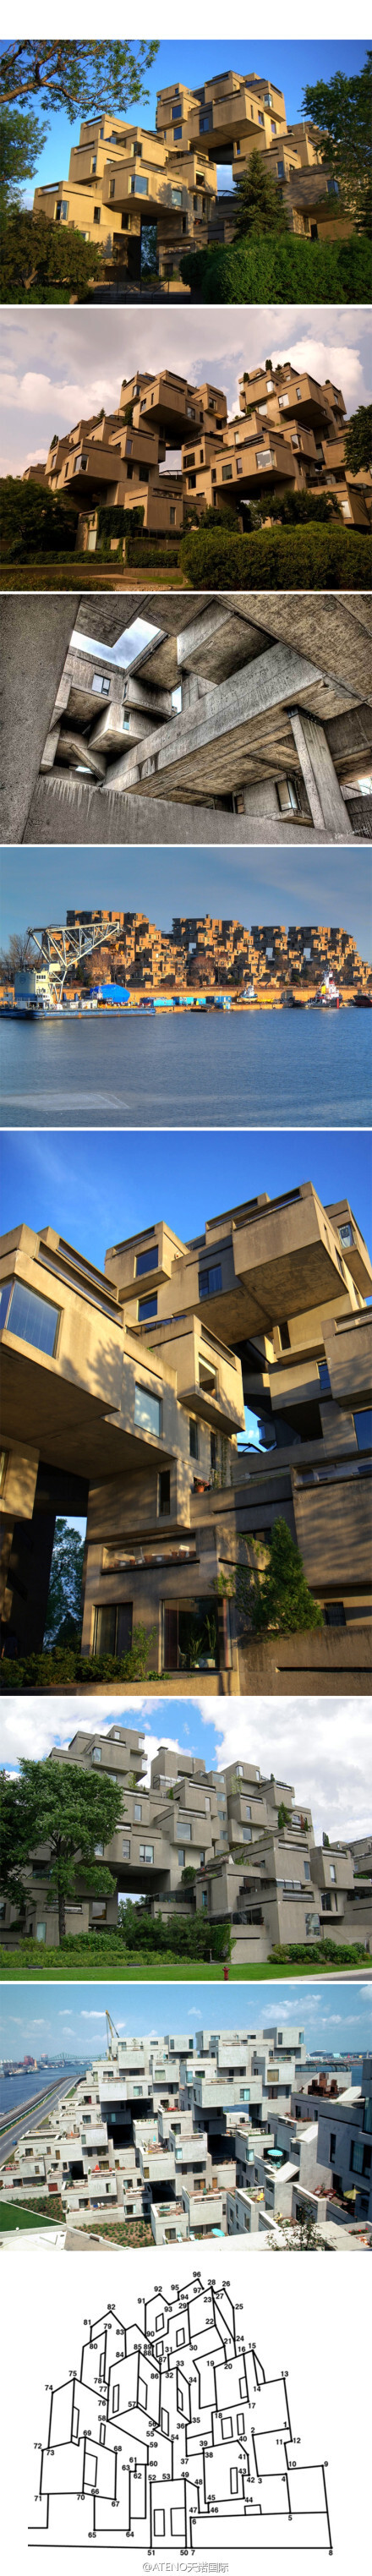 圣罗伦斯河畔的一个住宅小区,总设计师是加拿大建筑师萨夫迪moshe